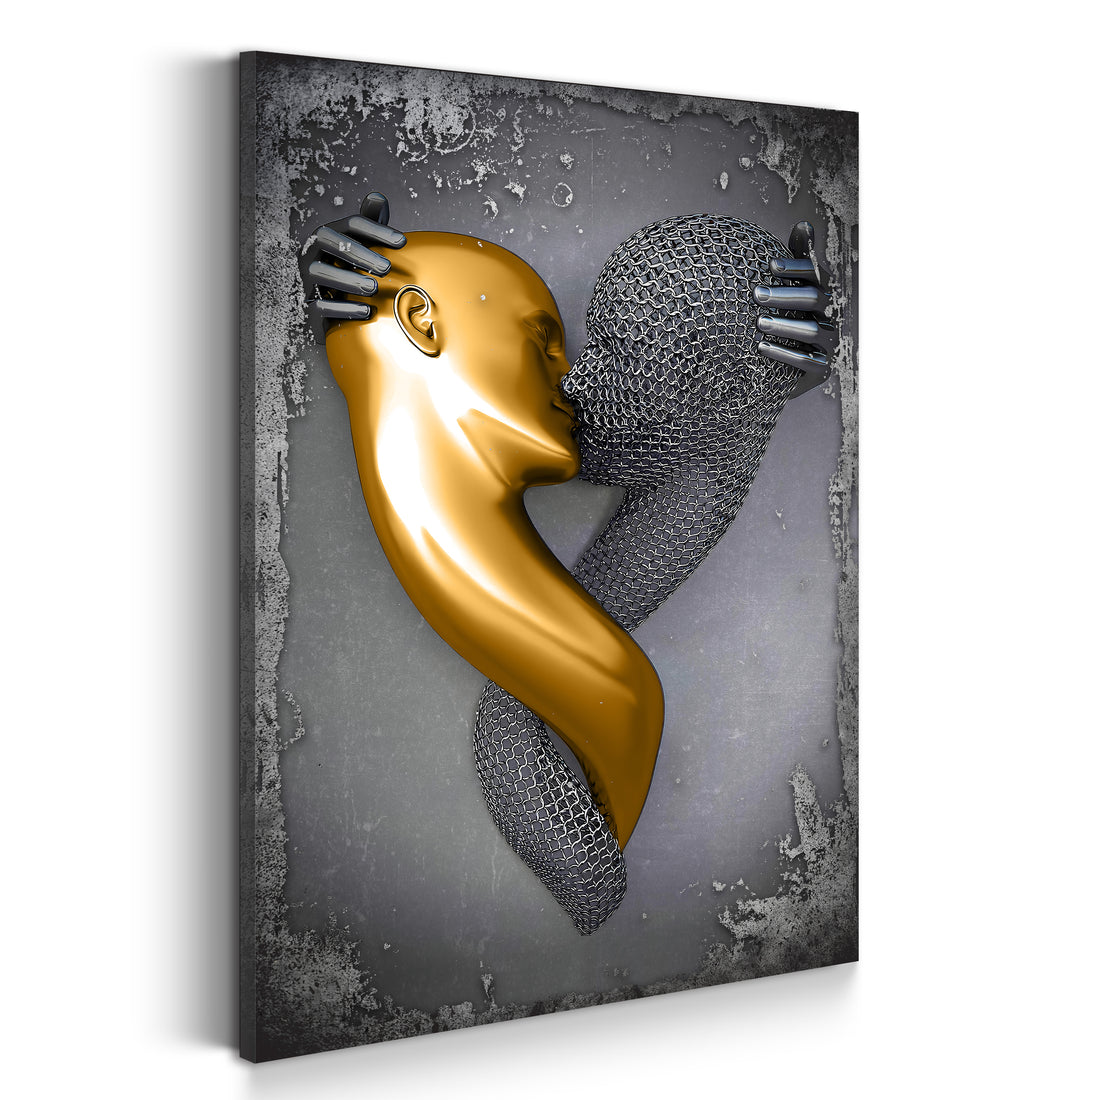 Wandbild Abstract 3D Metallfigur Kiss metallic Wandkunst Körper